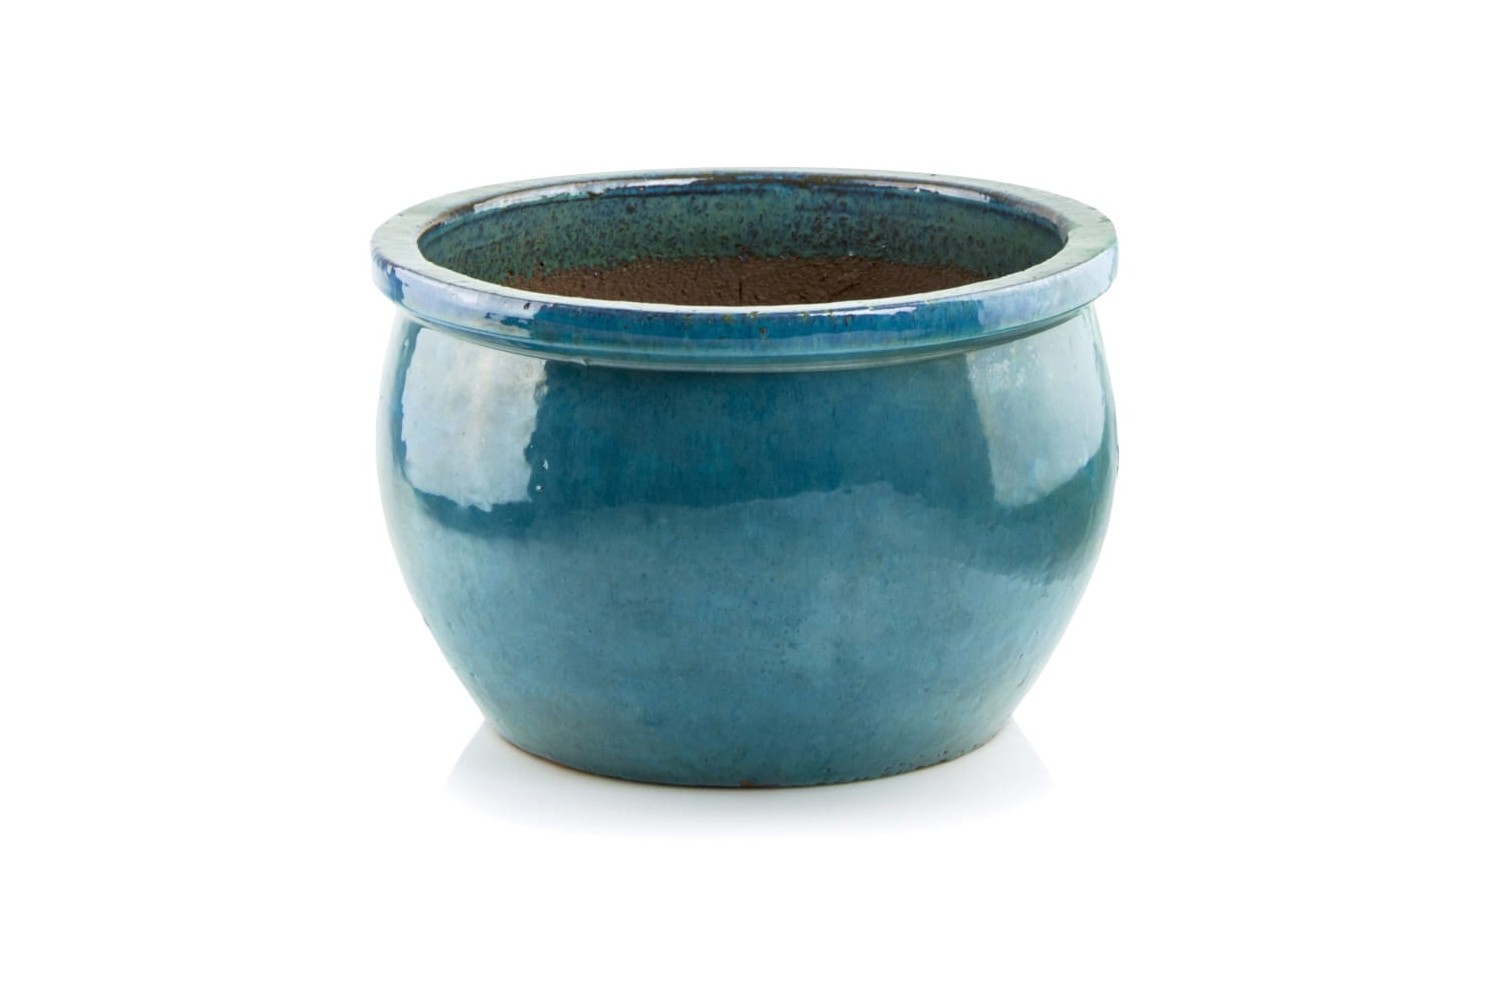 Donica ceramiczna | Glazed Round-Pot 28x16 cm